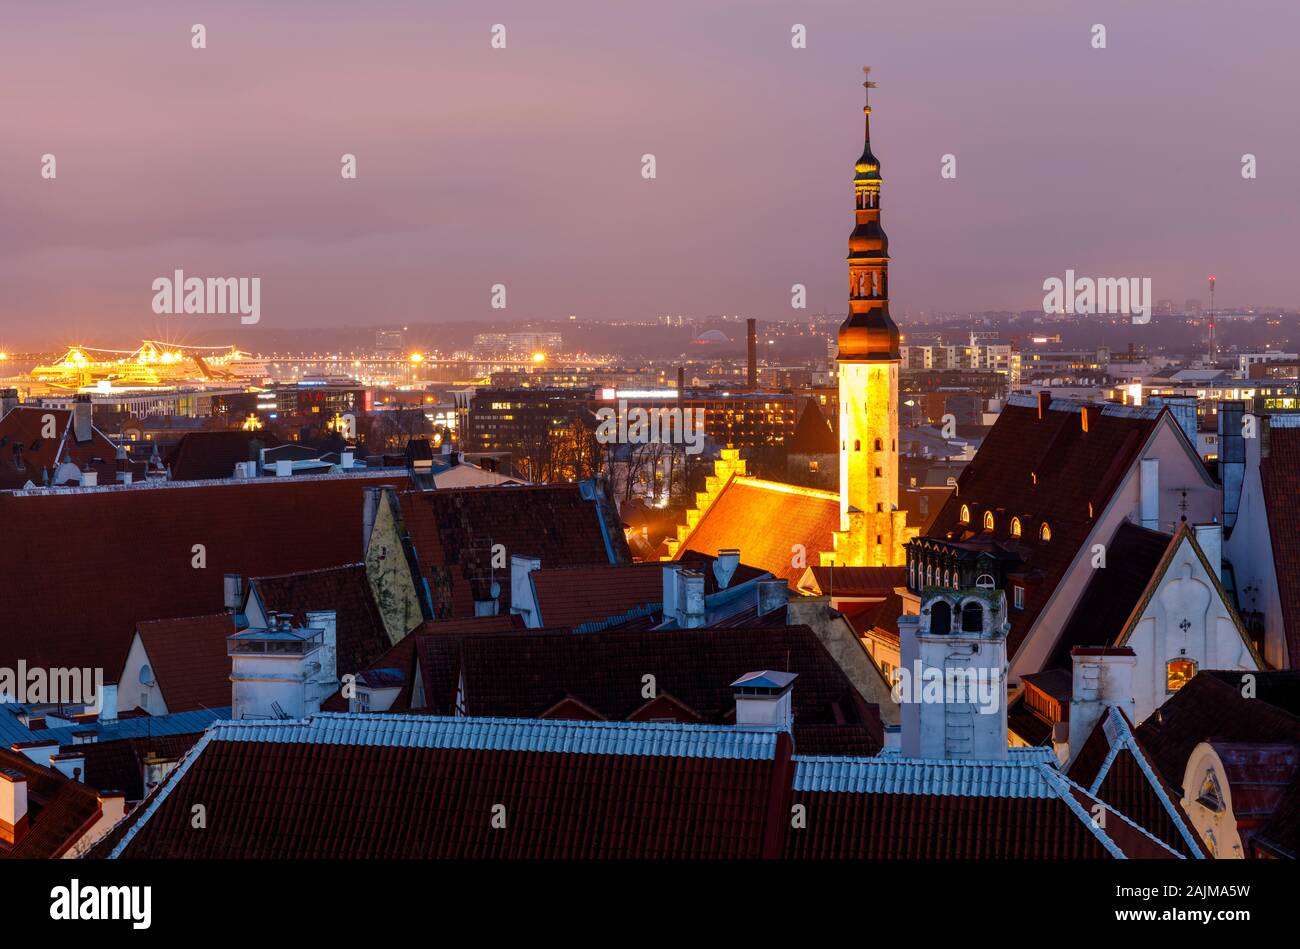 Illuminated tower of holy spirit church at night in Tallinn, Estonia Stock Photo